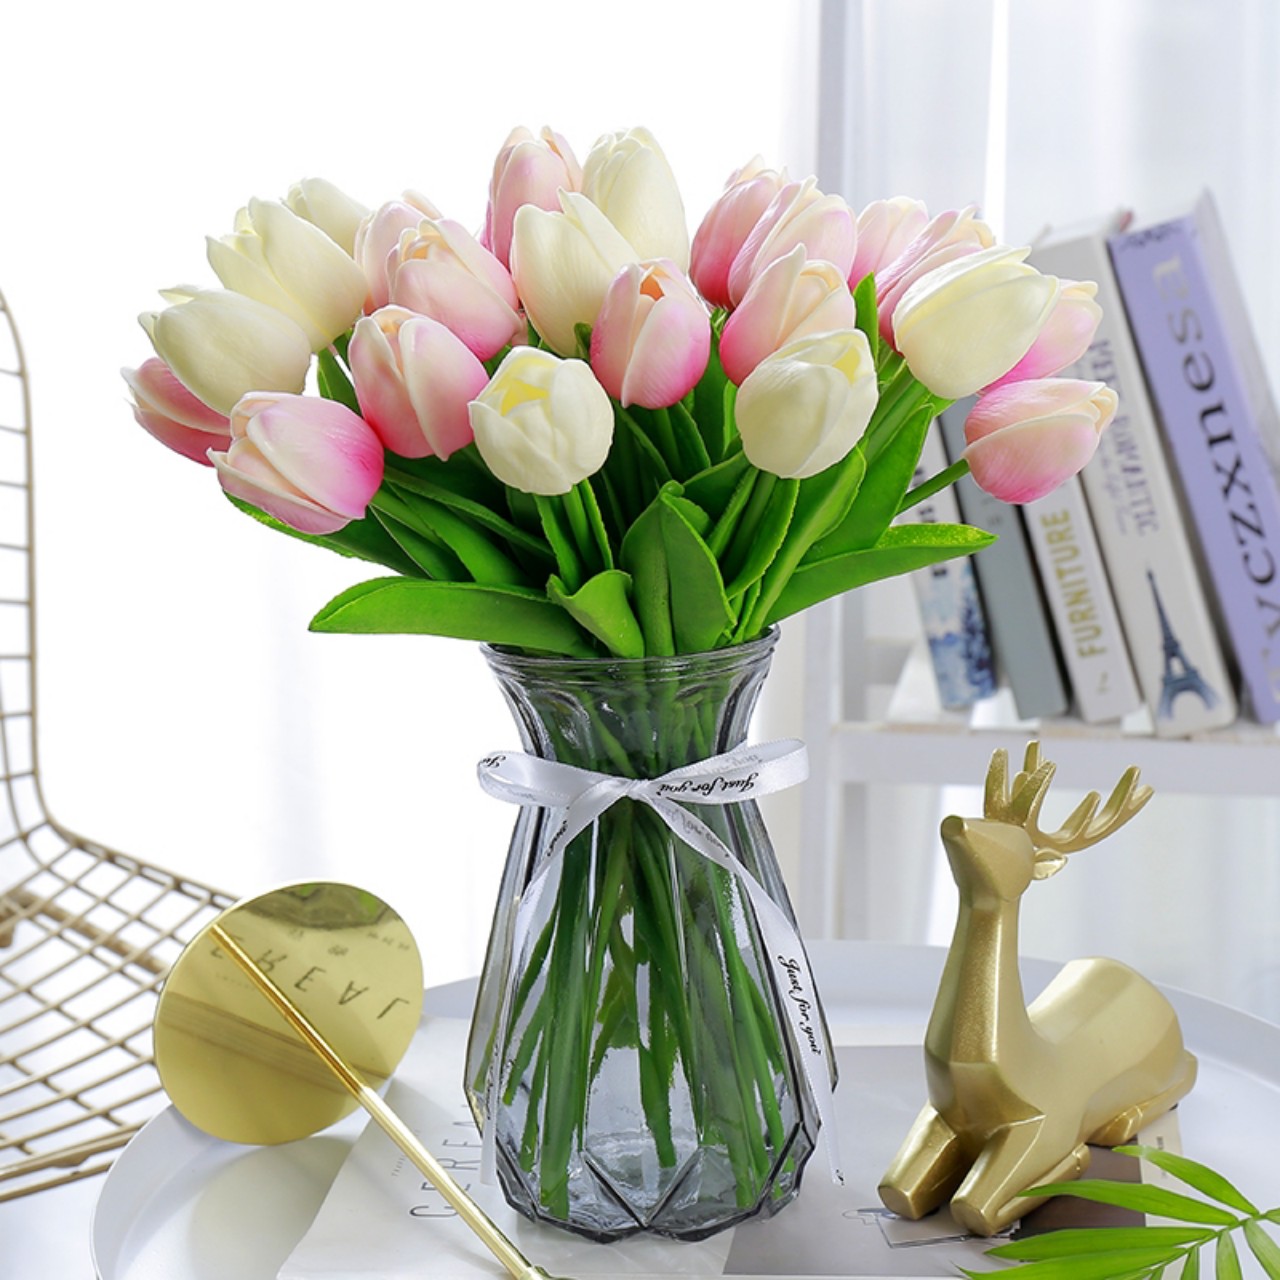 Hoa tuylip giả lá thẳng chất liệu PU, hoa tulip giả dùng để chụp ảnh, decor, trang trí nhà cửa.